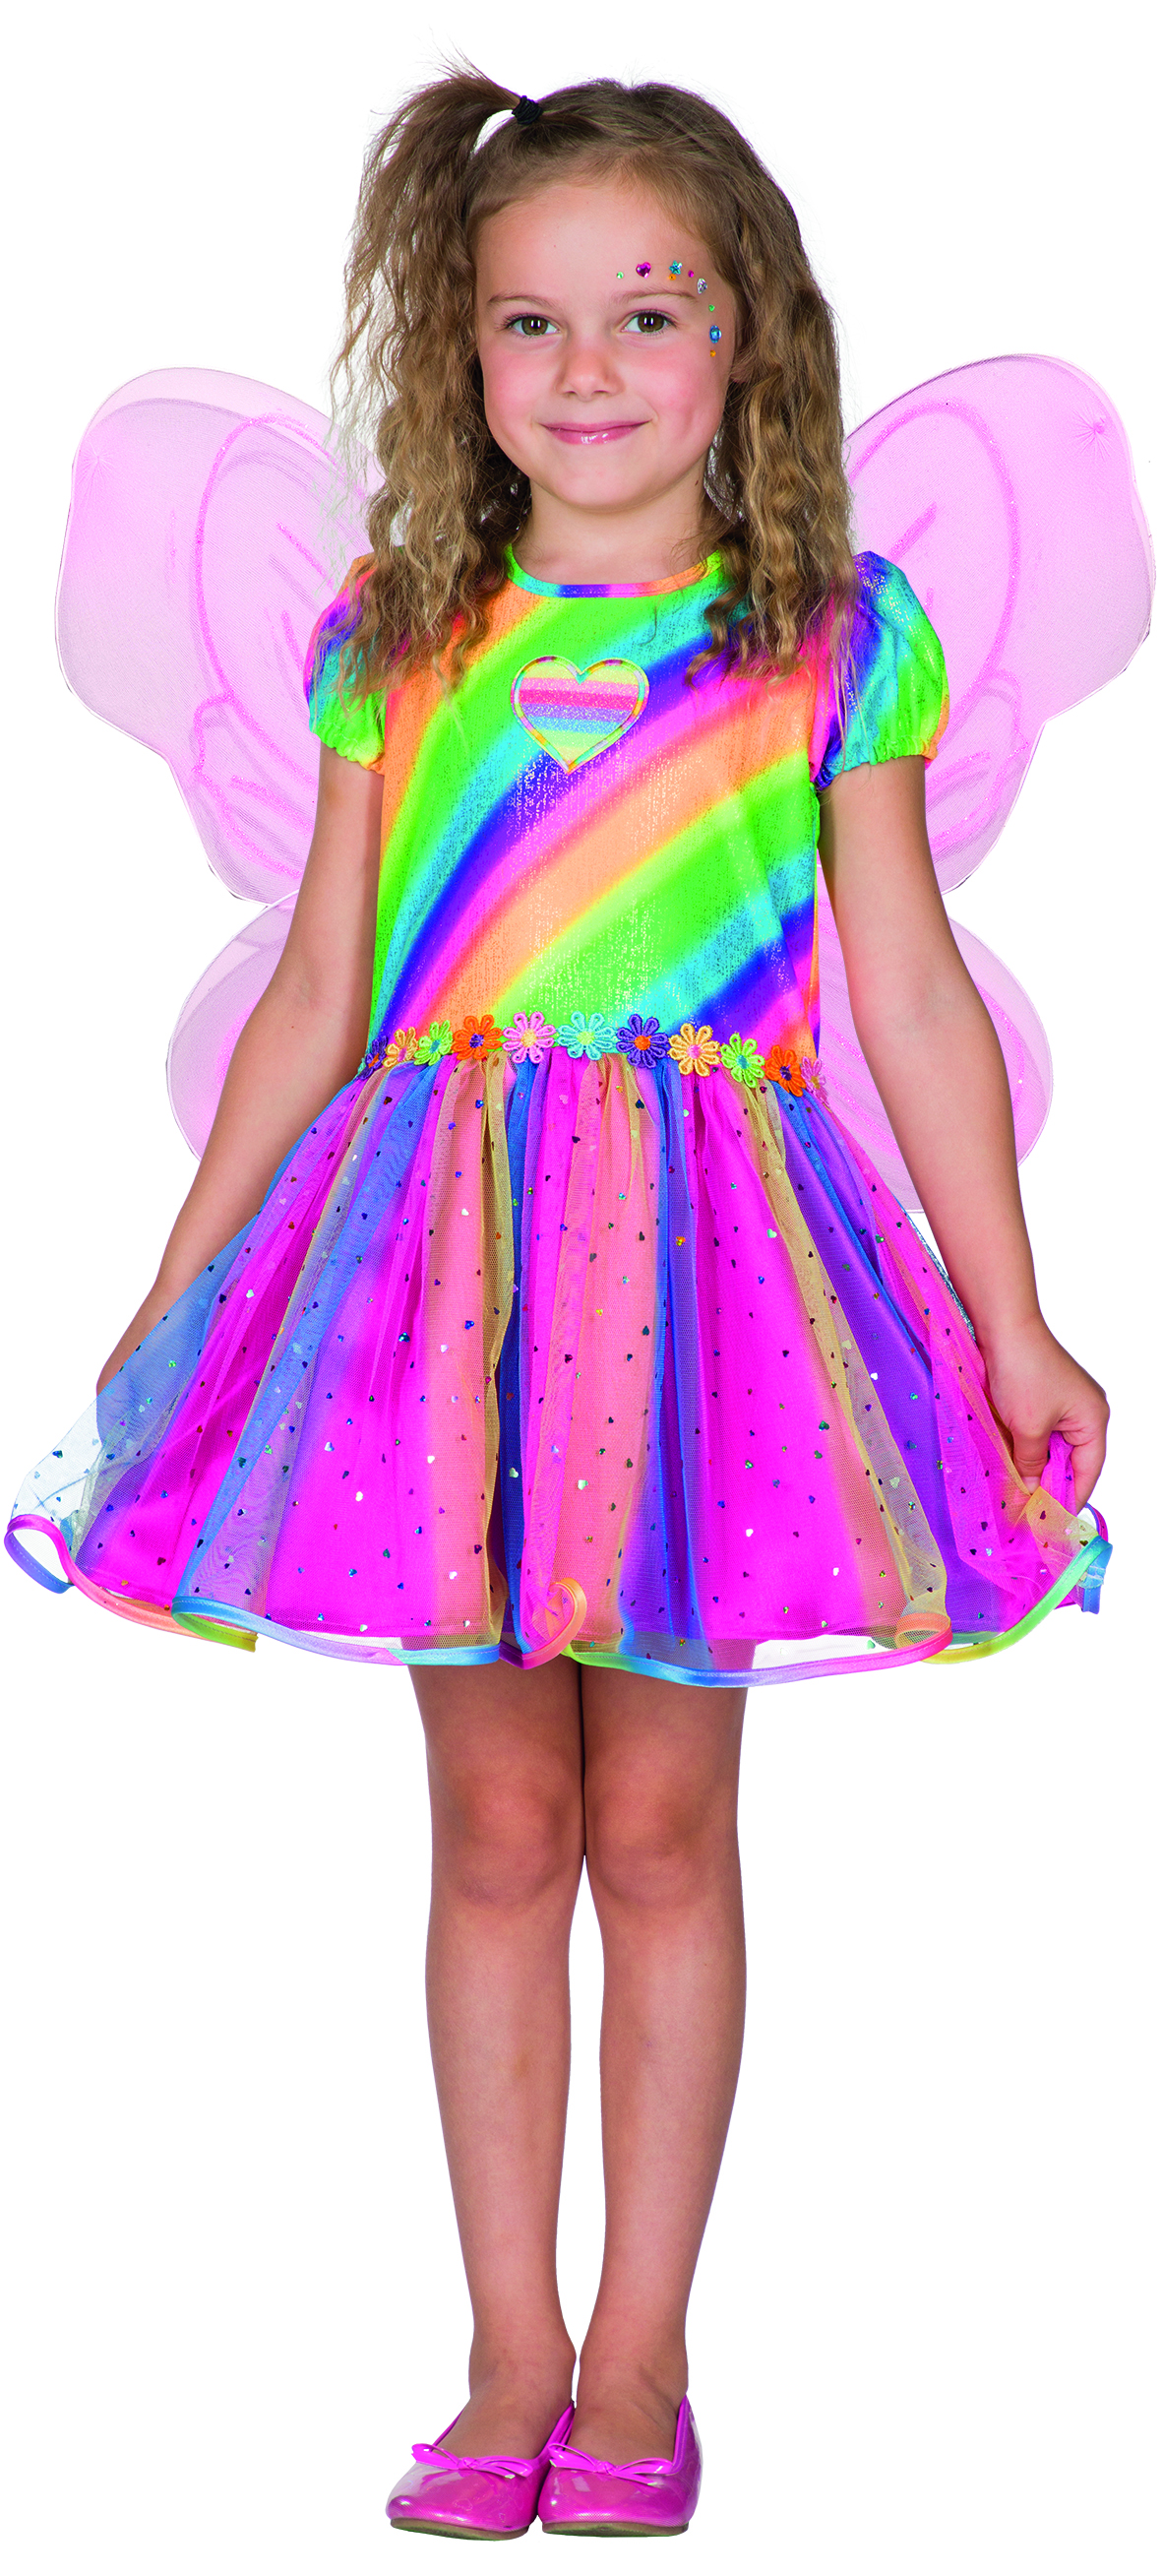 PxP 12521 - Regenbogenfee Kinder Kostüm, Regenbogen Feen Kleid, Gr. 104 - 128